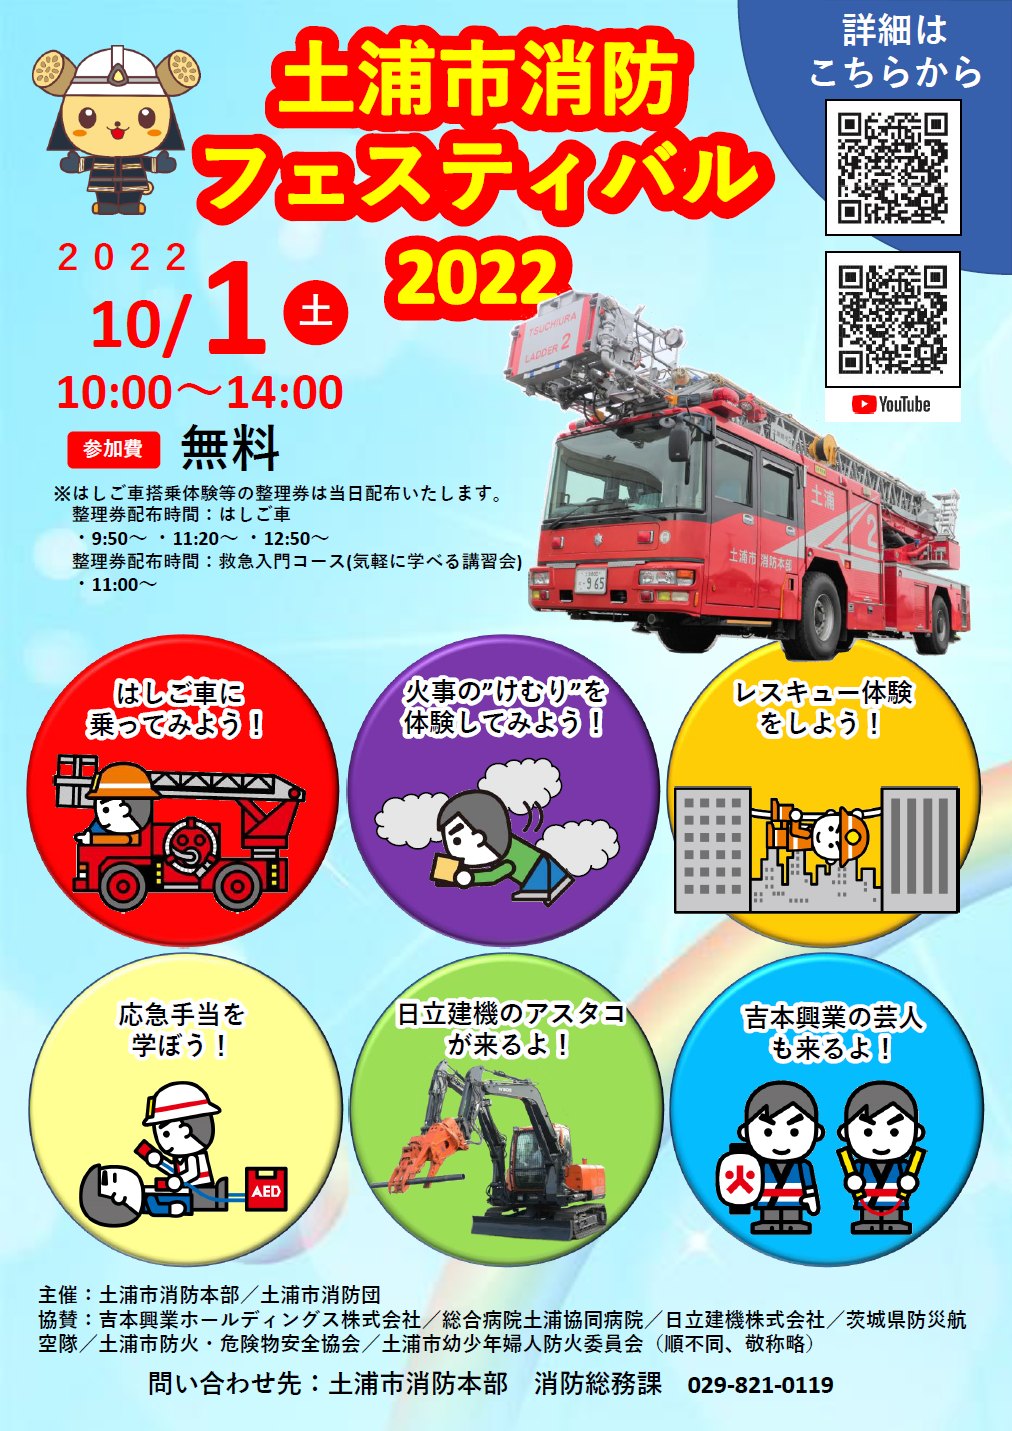 土浦市消防フェスティバル2022開催!page-visual 土浦市消防フェスティバル2022開催!ビジュアル